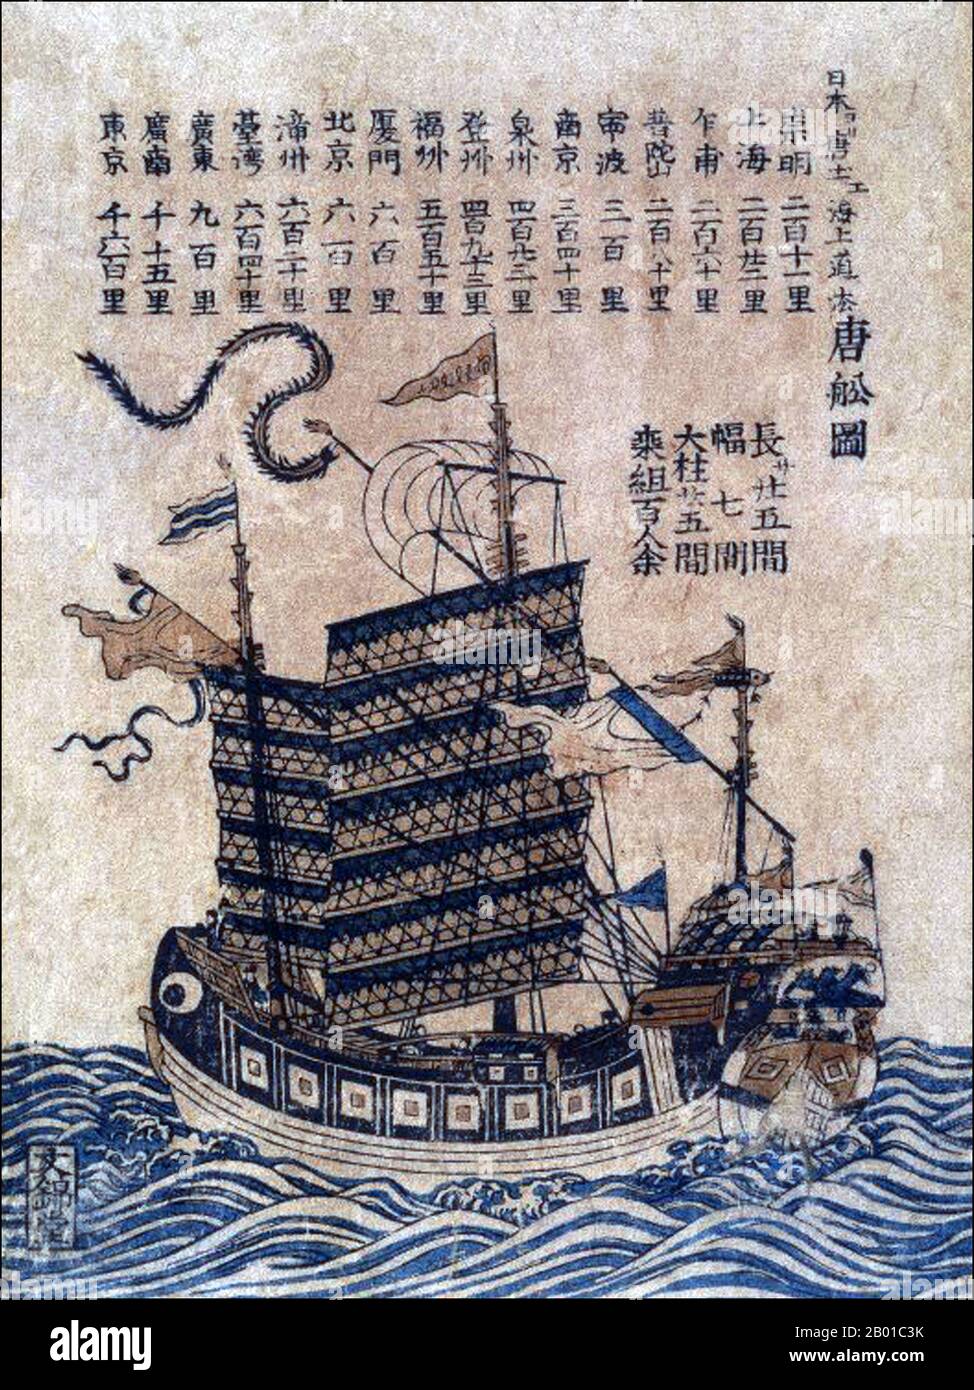 Cina: Una spazzatura oceanica (Tosen Zu) con elenchi della rotta marittima dalla Cina al Giappone. Stampa su legno, c.. 1847-1853.. Una roba di rifiuto è un disegno cinese antico della barca a vela ancora in uso oggi. Le giunche furono sviluppate durante la Dinastia Han (206 a.C.–220 d.C.) e furono usate come navi marittime già nel 2nd° secolo d.C. Si sono evoluti nelle dinastie successive e sono stati utilizzati in tutta l'Asia per lunghi viaggi oceanici. Sono stati trovati, e in numero minore sono ancora trovati, in tutta l'Asia sudorientale e l'India, ma soprattutto in Cina, forse più famoso a Hong Kong. Foto Stock